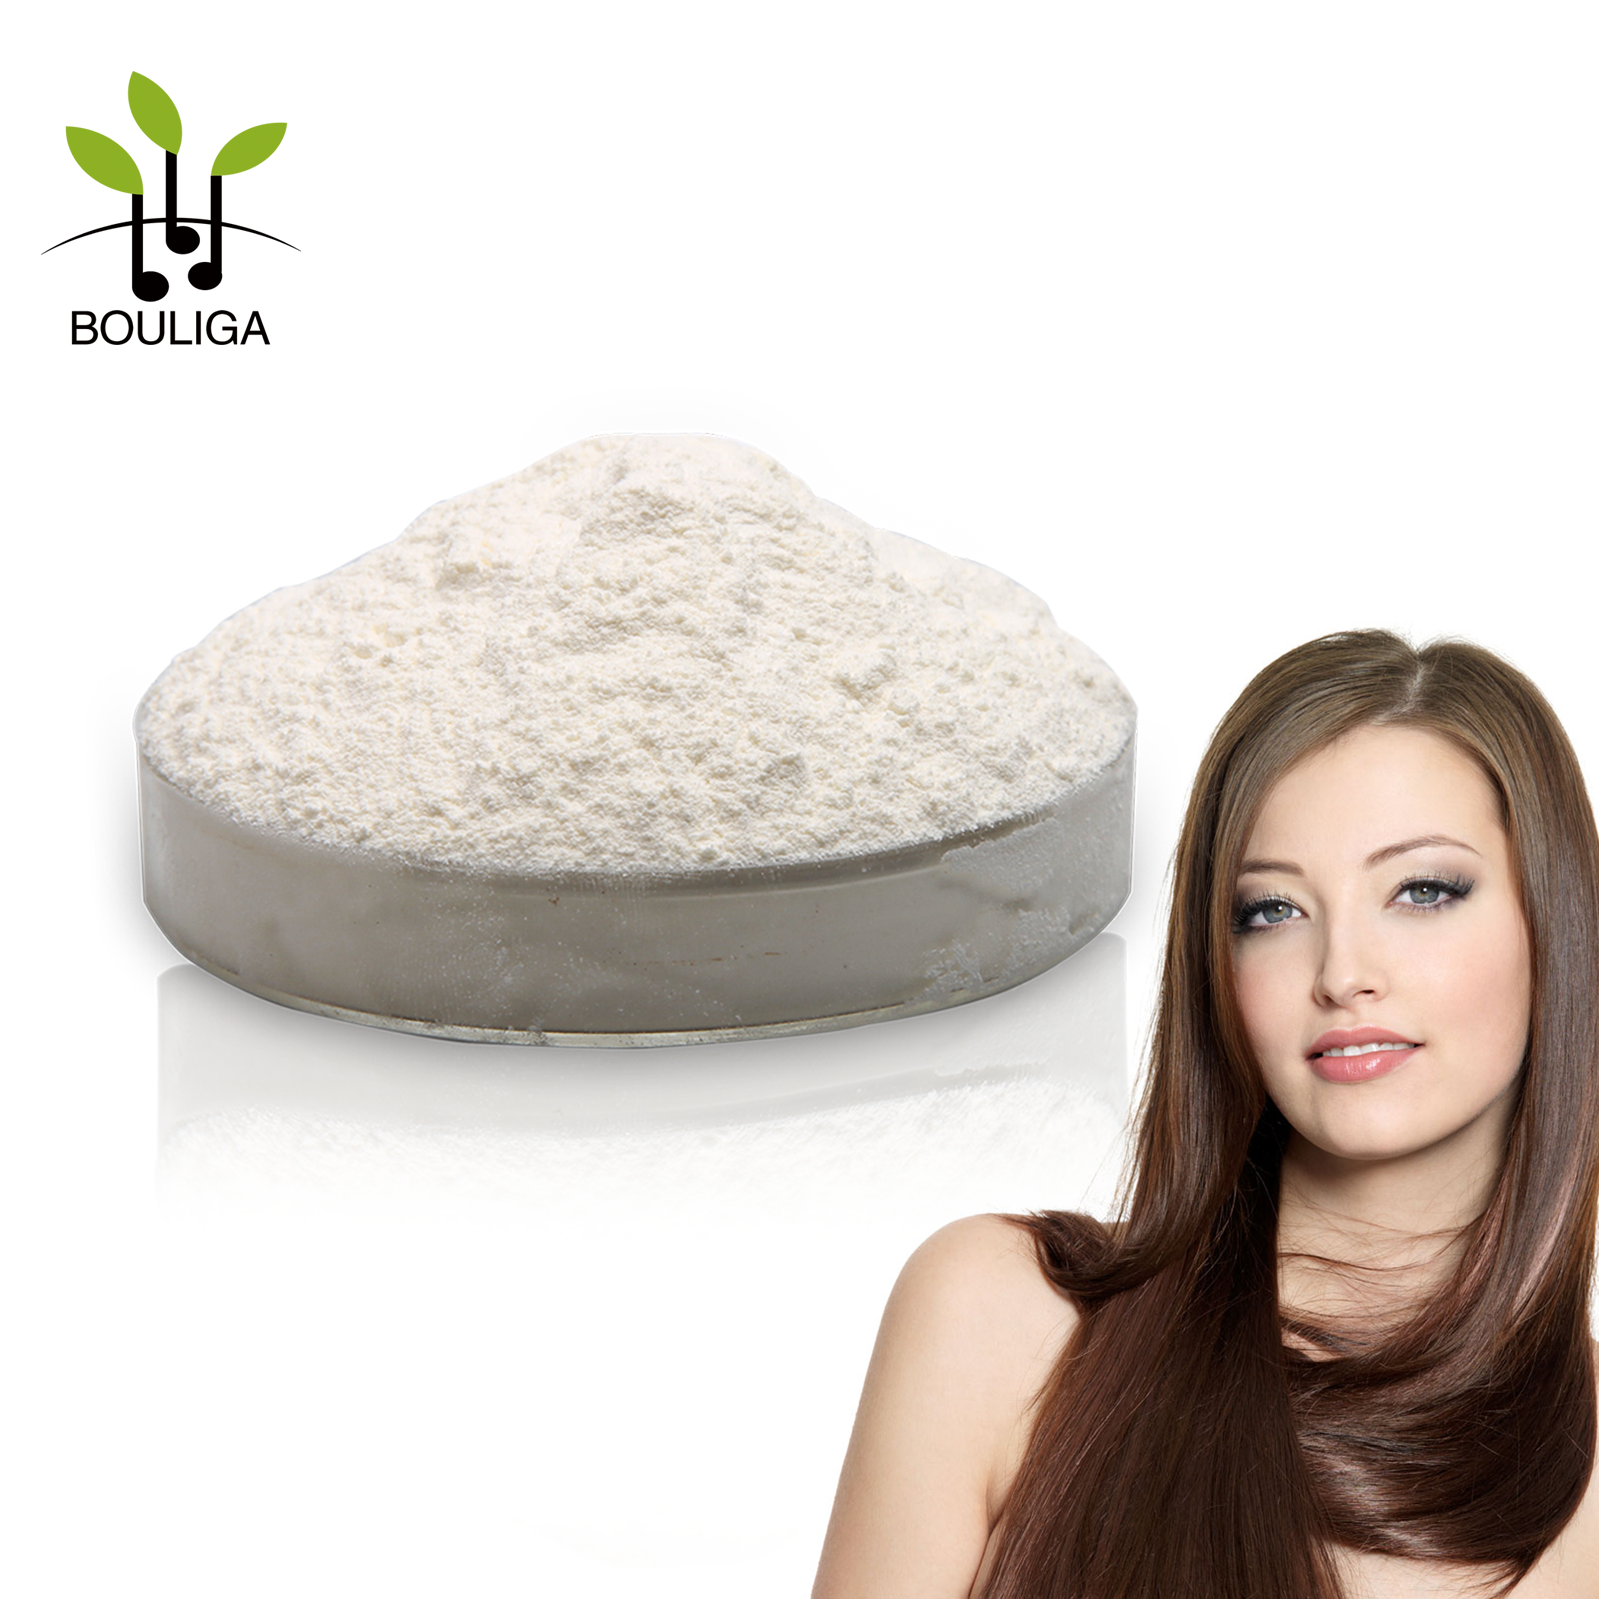 Shandong Bouliga Cationic Sodium Hyaluronate Powder